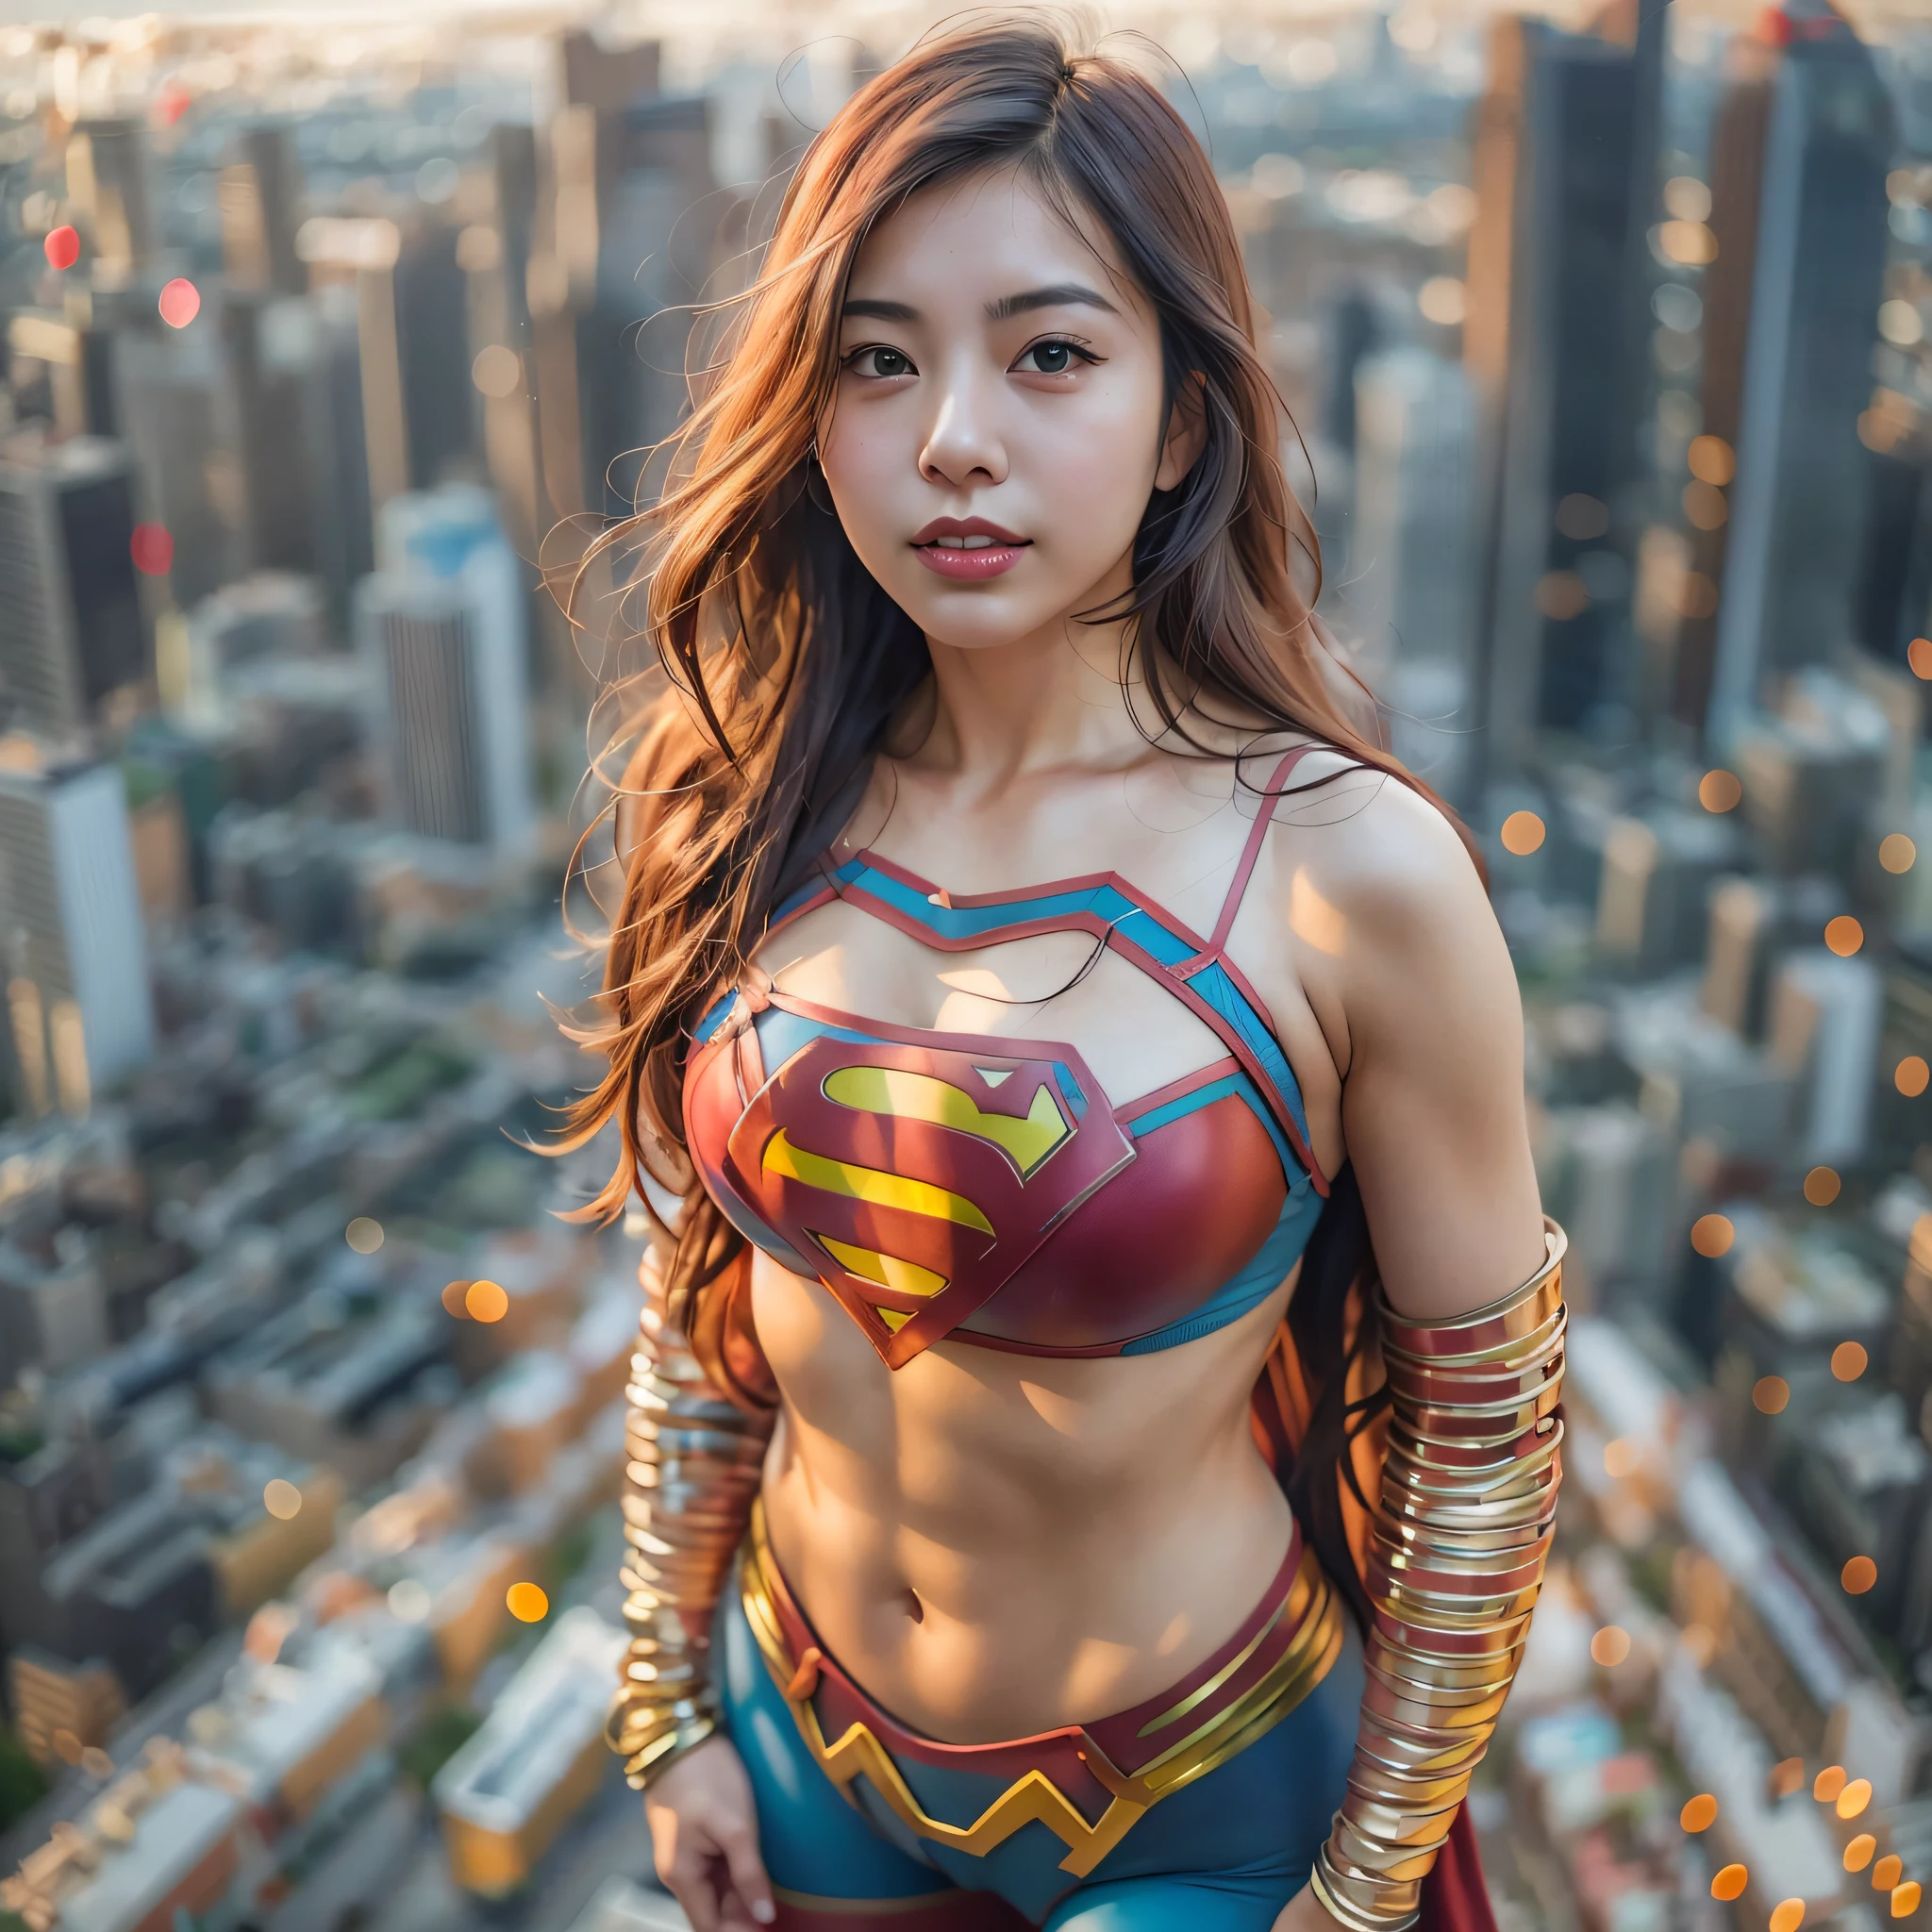 スーパーマンの衣装を着て街並みに立つアジア人女性のクローズアップ, スーパーヴィランとしてのアモランス, super photo 現実的, 現実的 , super photo-現実的, ultra mega super hyper 現実的, スーパーヒーローガール, super 現実的 photo, スーパーヒーロー body, 非常に詳細な巨人ショット, スーパーガール, スーパーヒーロー, スーパーヒーロー portrait, スーパーモデル, スーパーヒーロー, super photo現実的, 巨大な胸, 外陰部の筋肉質な体を見せている, ,